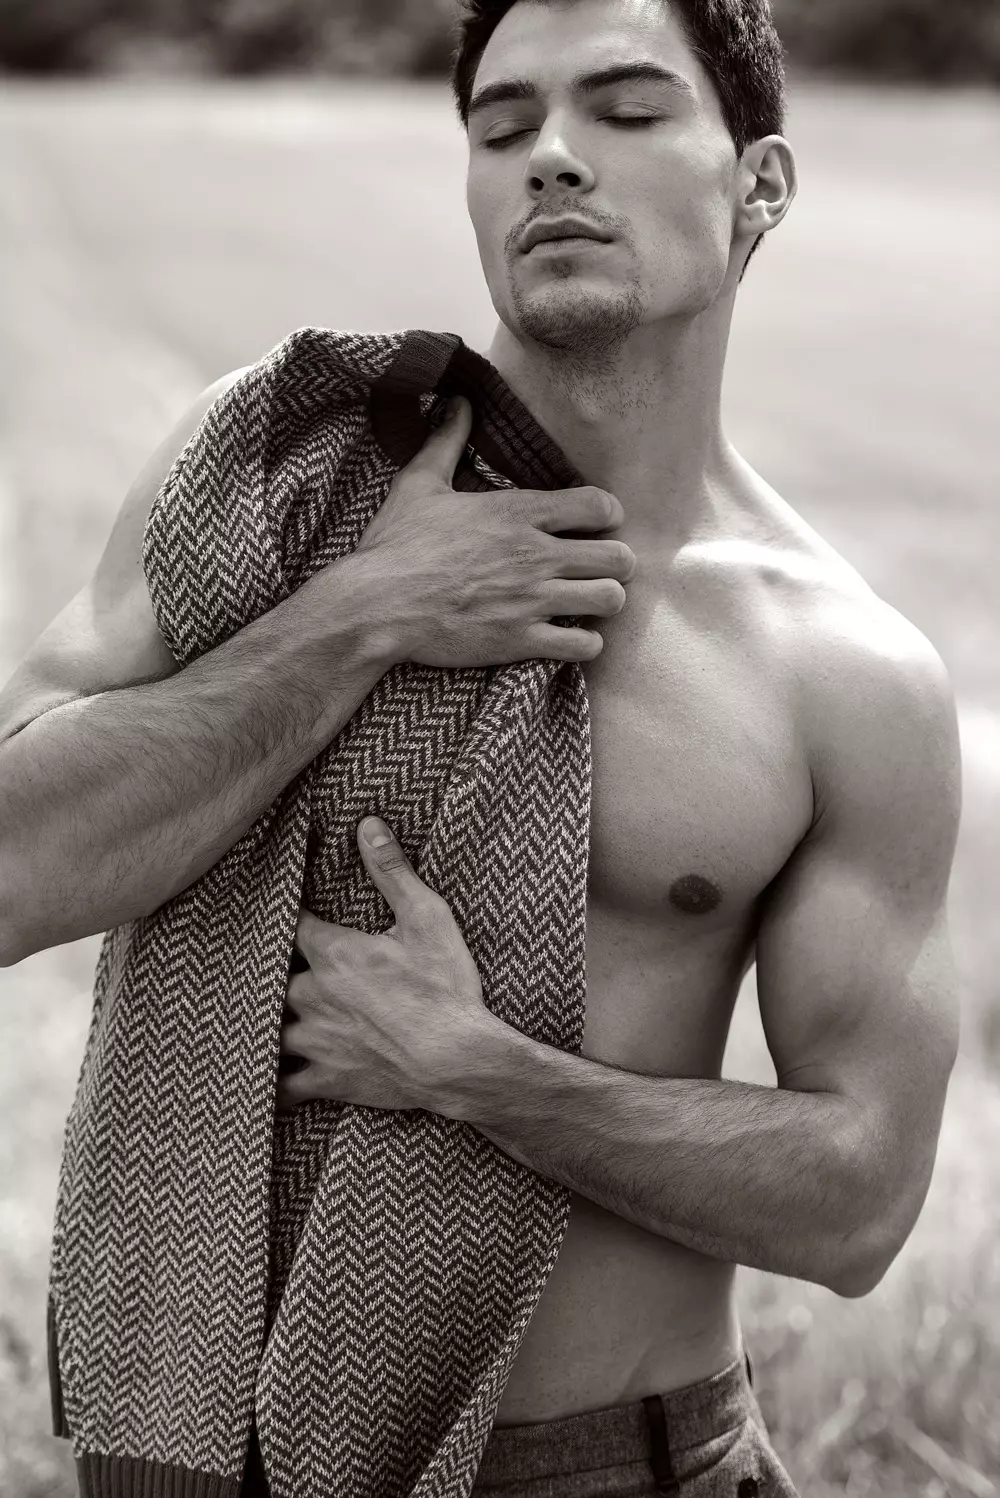 Saksa modell Markus Schäfer poseerib Steffen Mölleri uutel võtetel hämmastavalt.